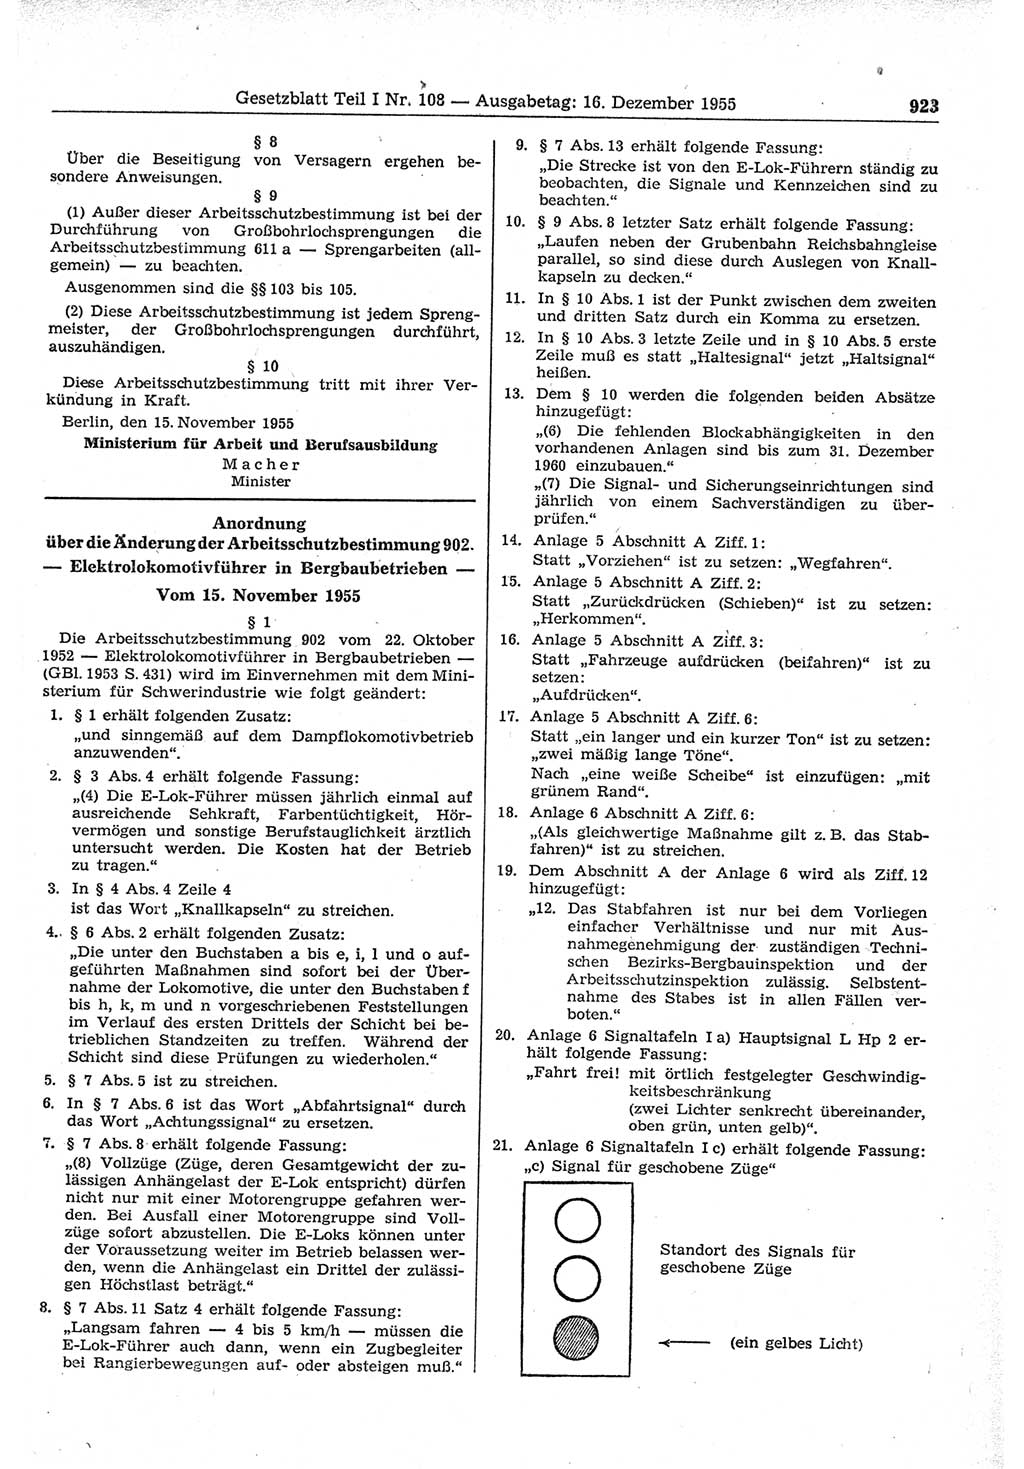 Gesetzblatt (GBl.) der Deutschen Demokratischen Republik (DDR) Teil Ⅰ 1955, Seite 923 (GBl. DDR Ⅰ 1955, S. 923)